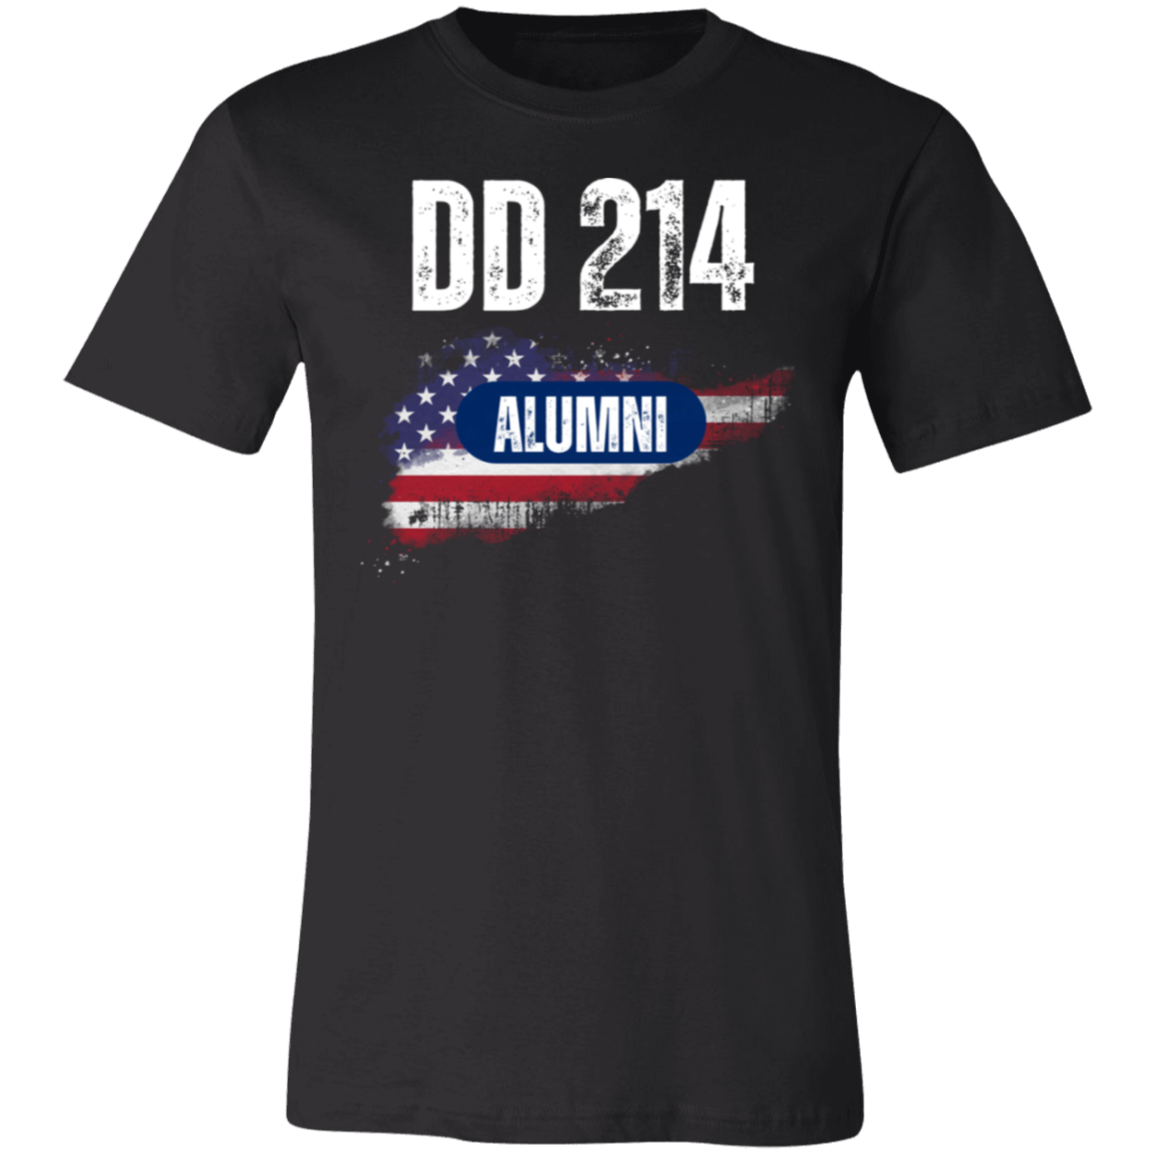 DD214 Alumni